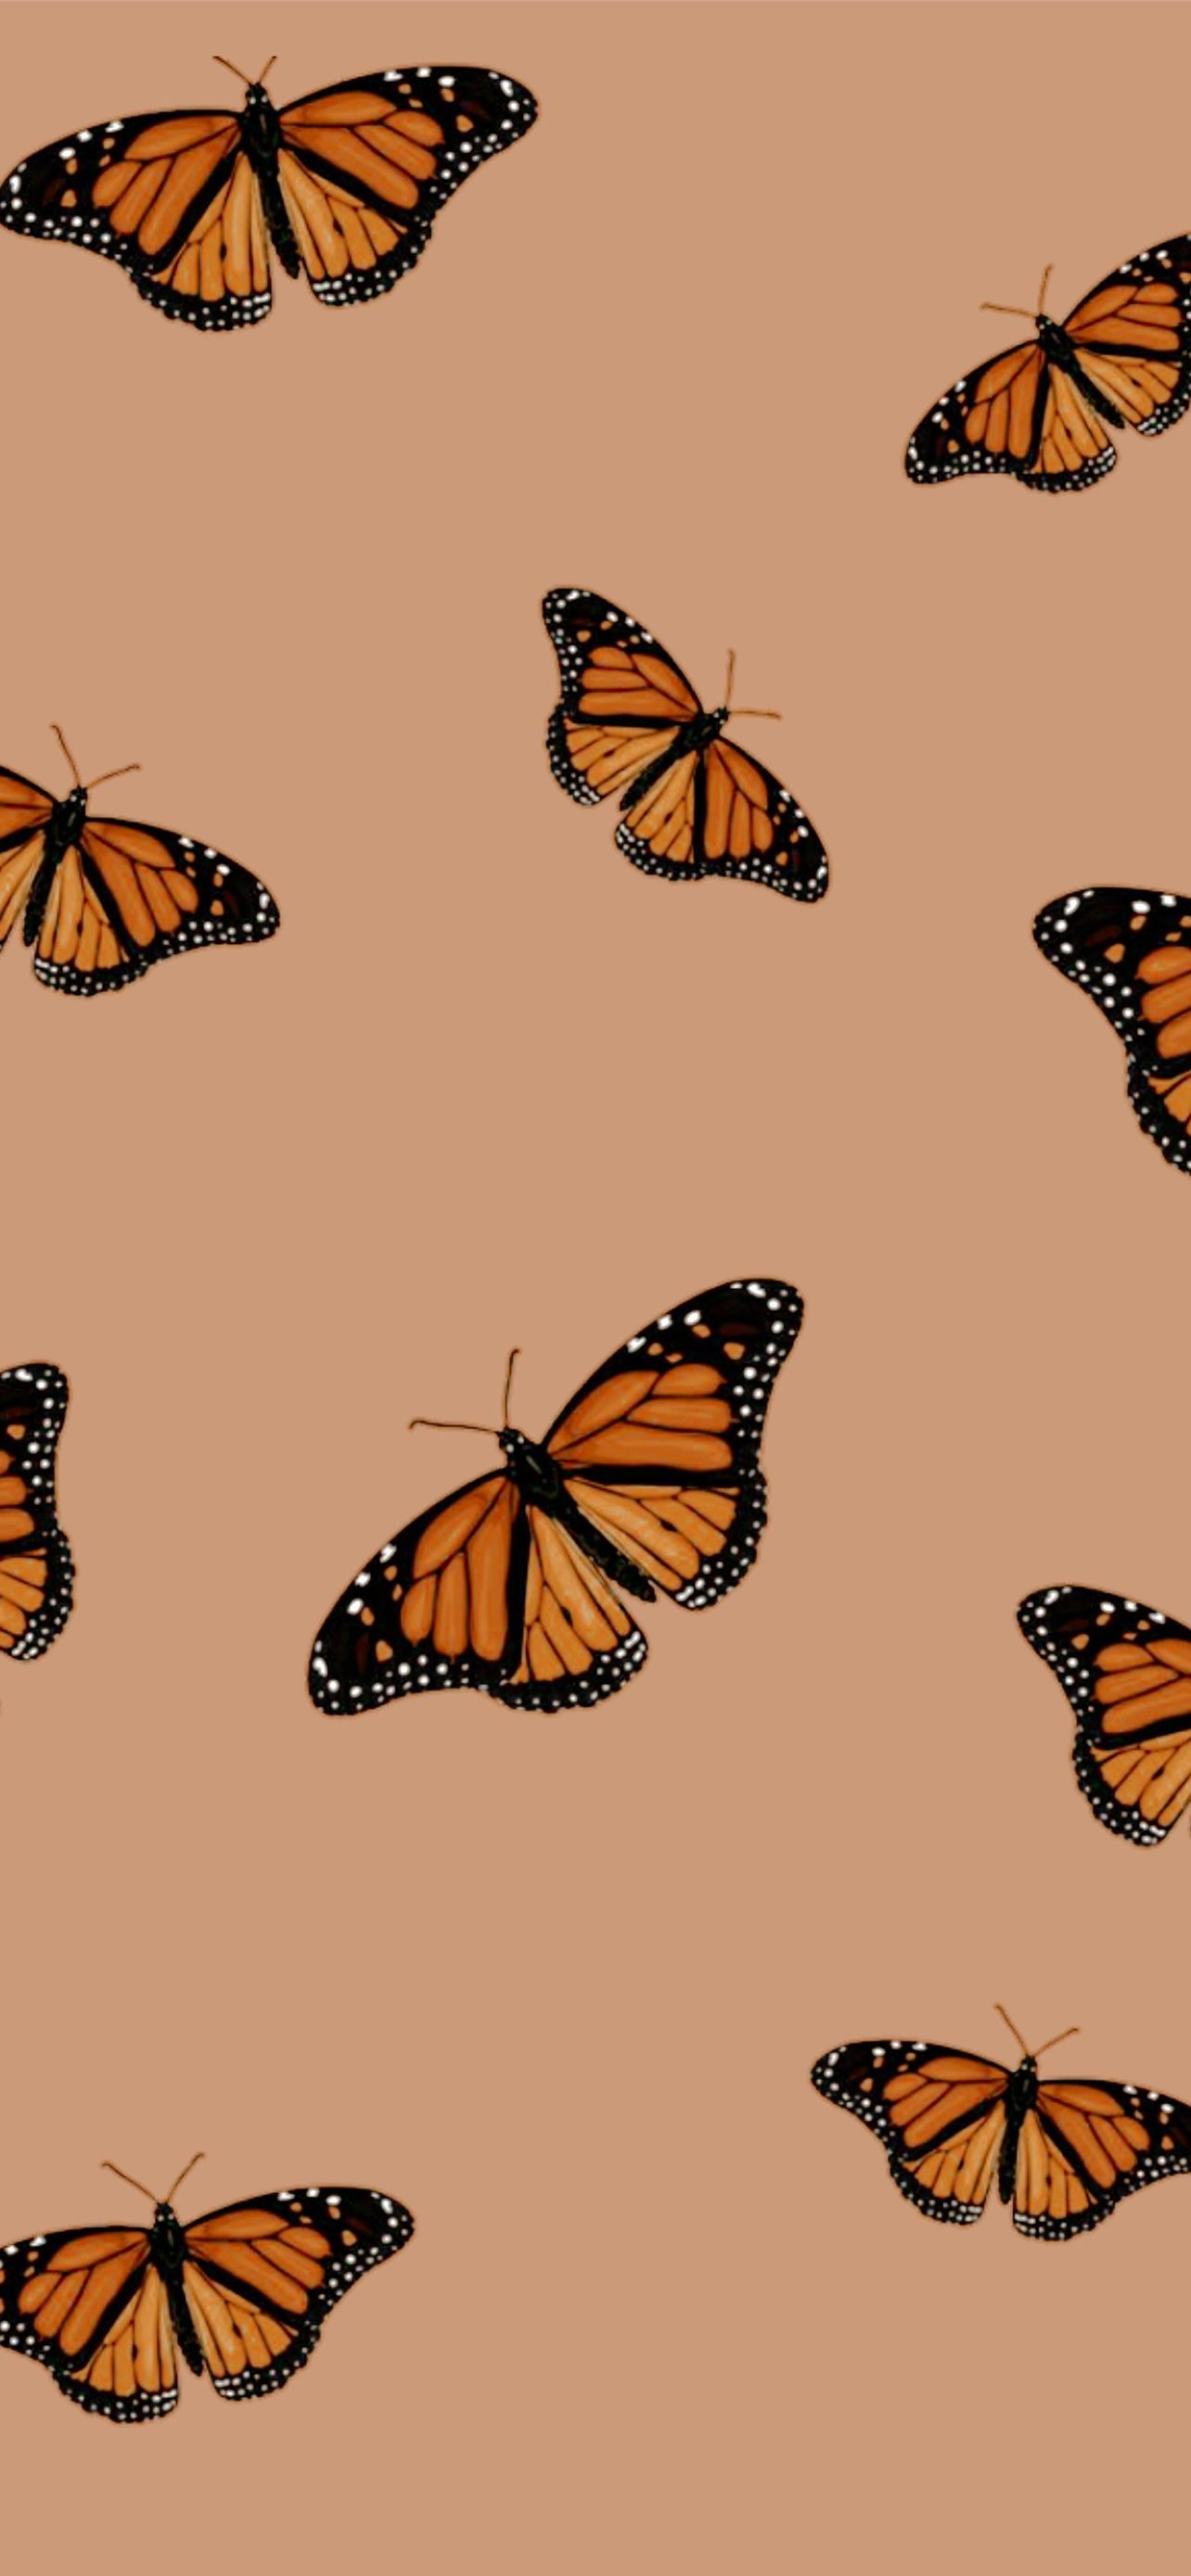 Butterflies IPhone Wallpaper HD IPhone Wallpapers Wallpaper Download   MOONAZ